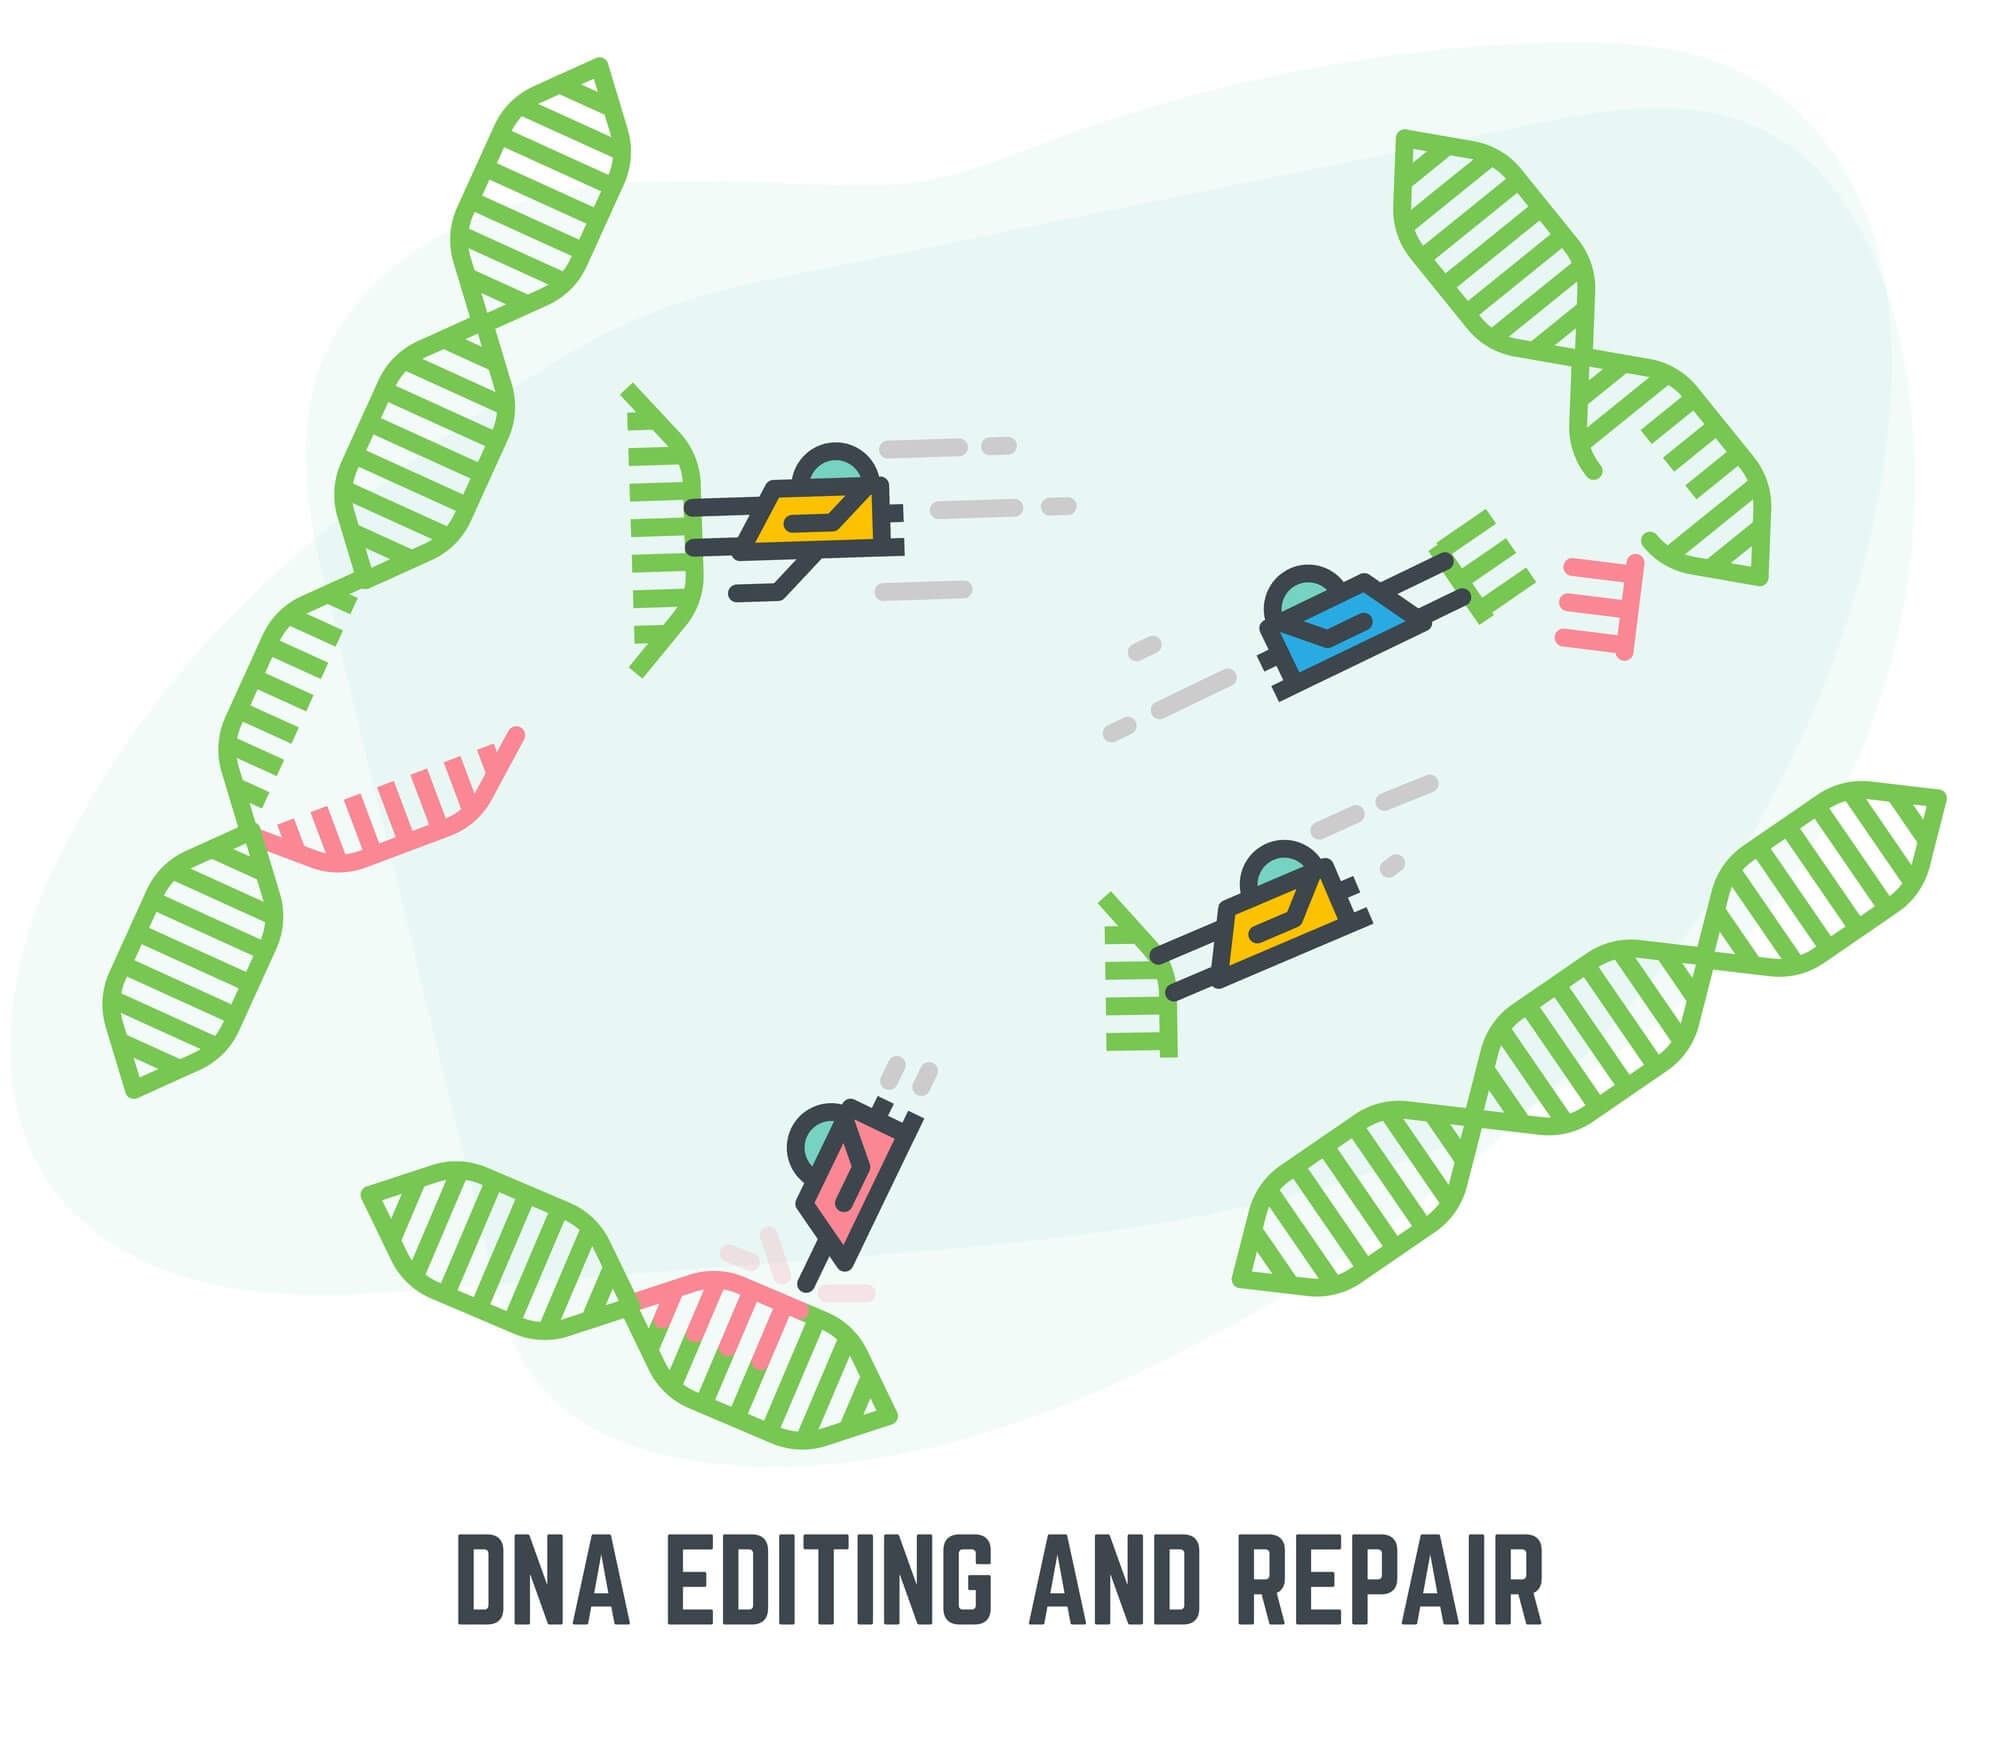 עריכה גנטית.  CRISPR/CAS9. <a href="https://depositphotos.com. ">המחשה: depositphotos.com</a>